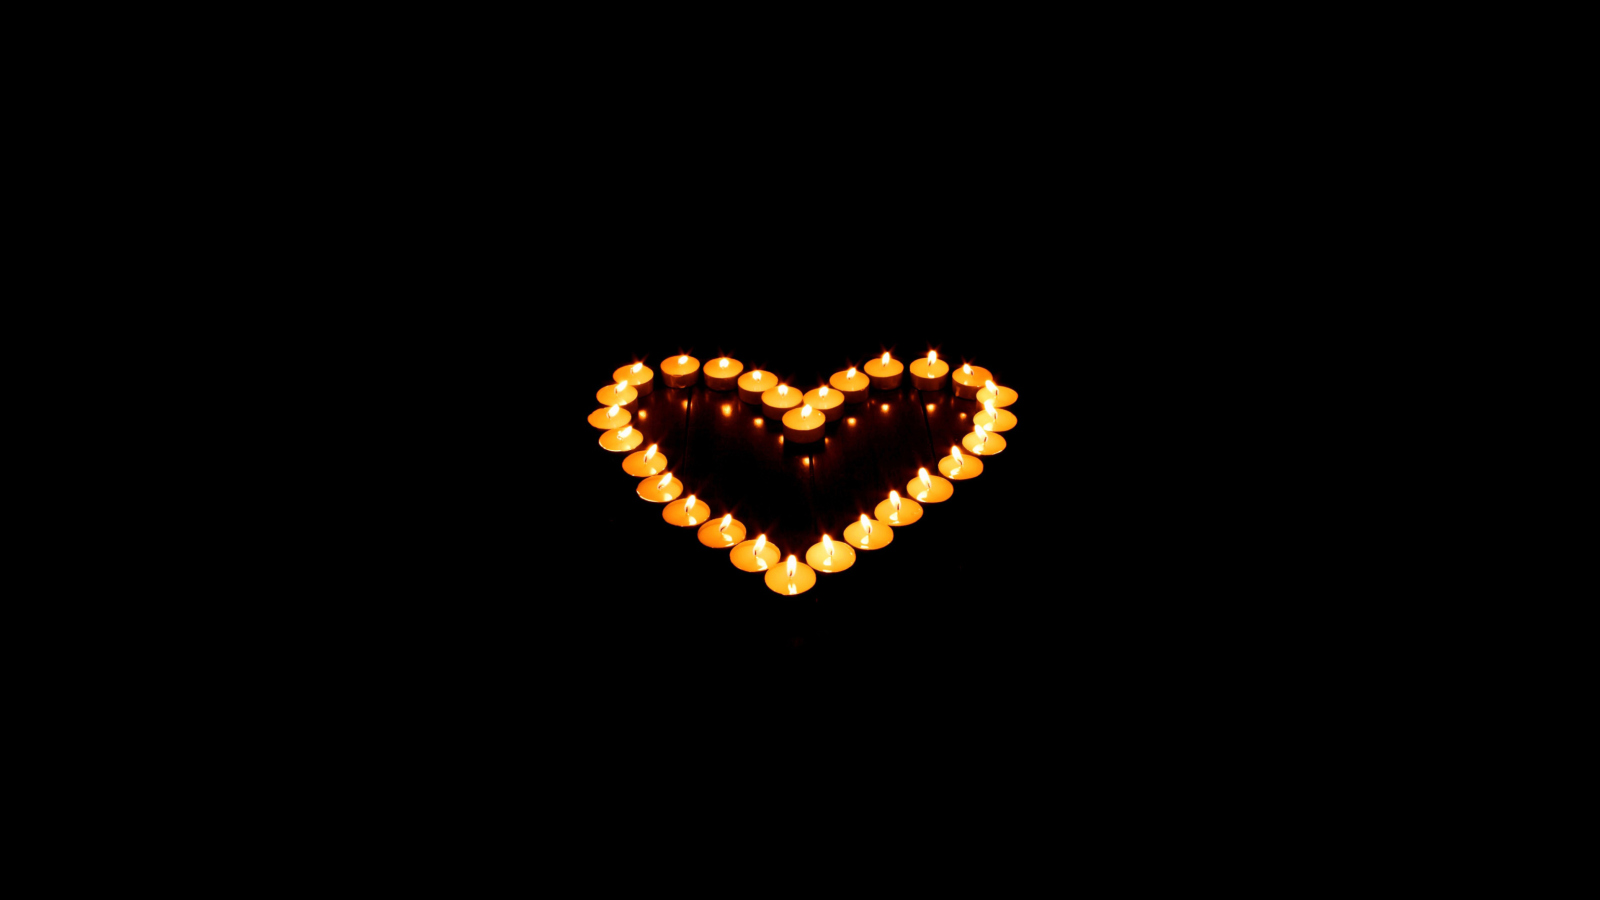 Обои Candle Heart 1600x900